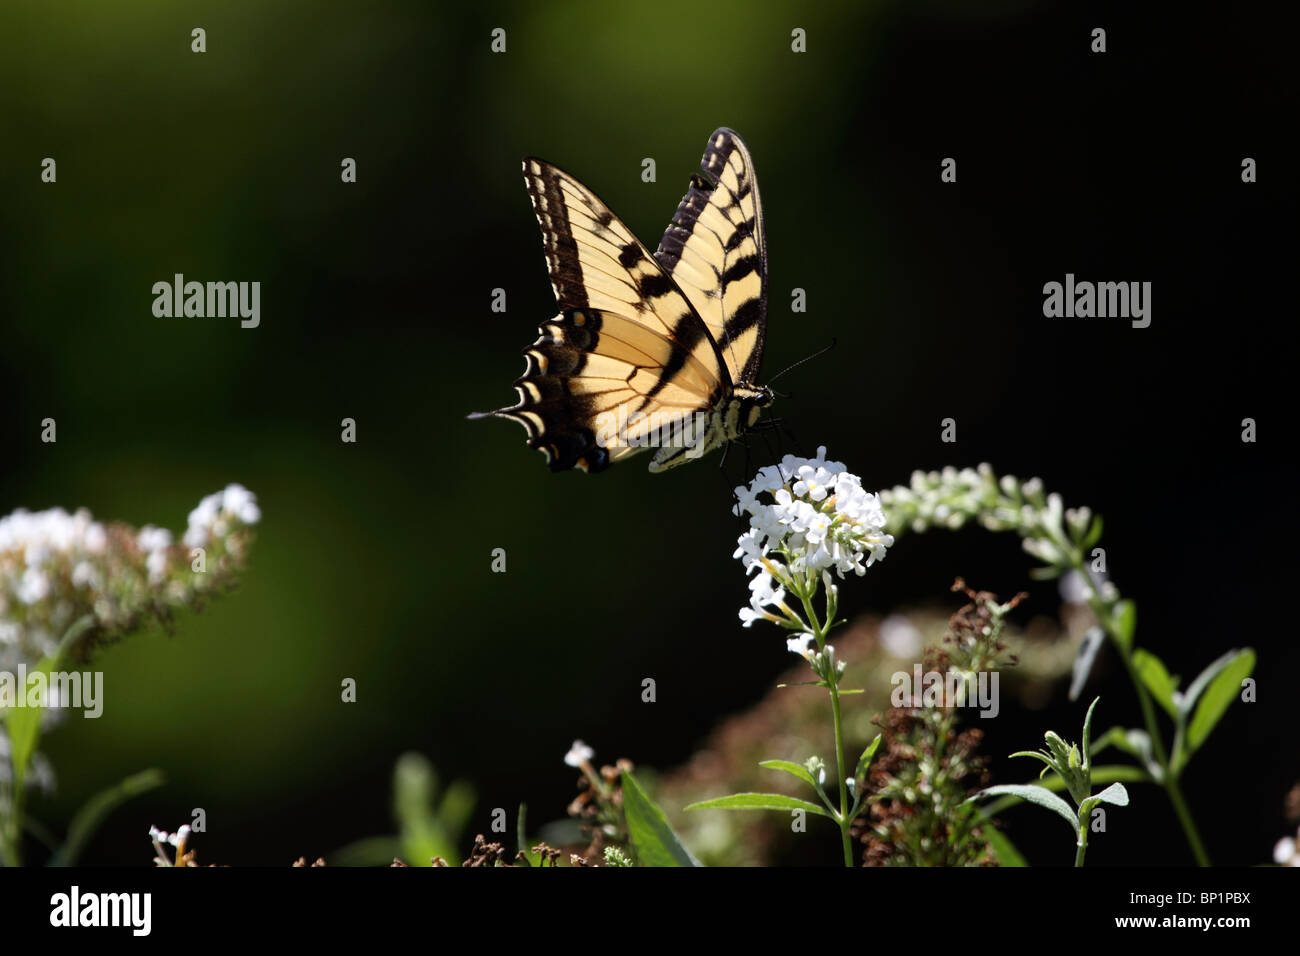 Ein Tiger Schwalbenschwanz Schmetterling Papilio Glaucus, Fütterung auf eine weiße Blume, New Jersey, USA, Nordamerika Stockfoto